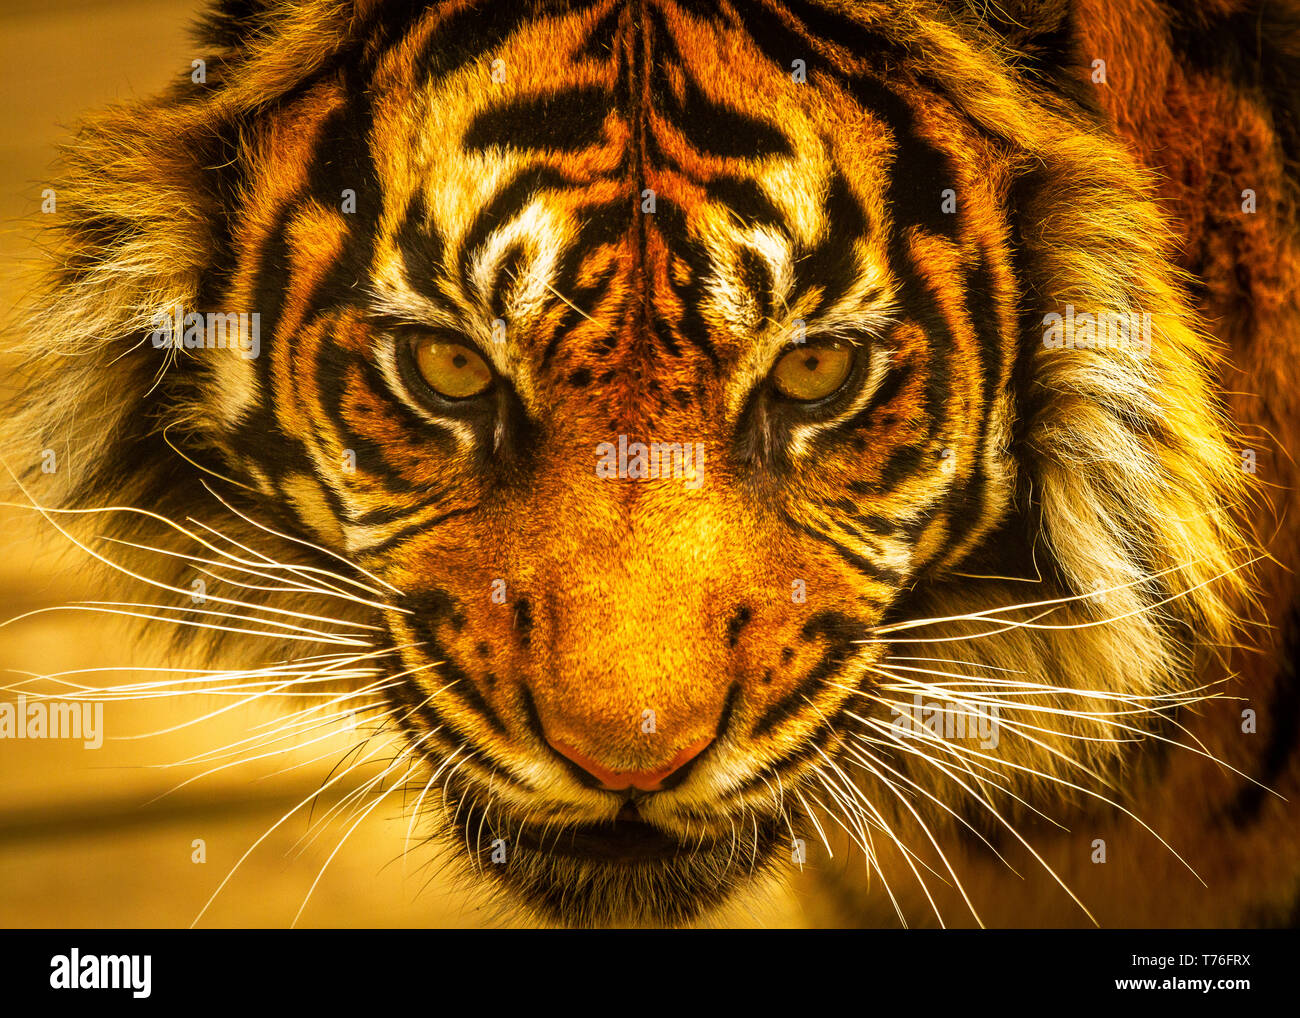 Tiger (Sumatran) / Panthera tigris sumatrae at Dudley Zoo UK Stock Photo